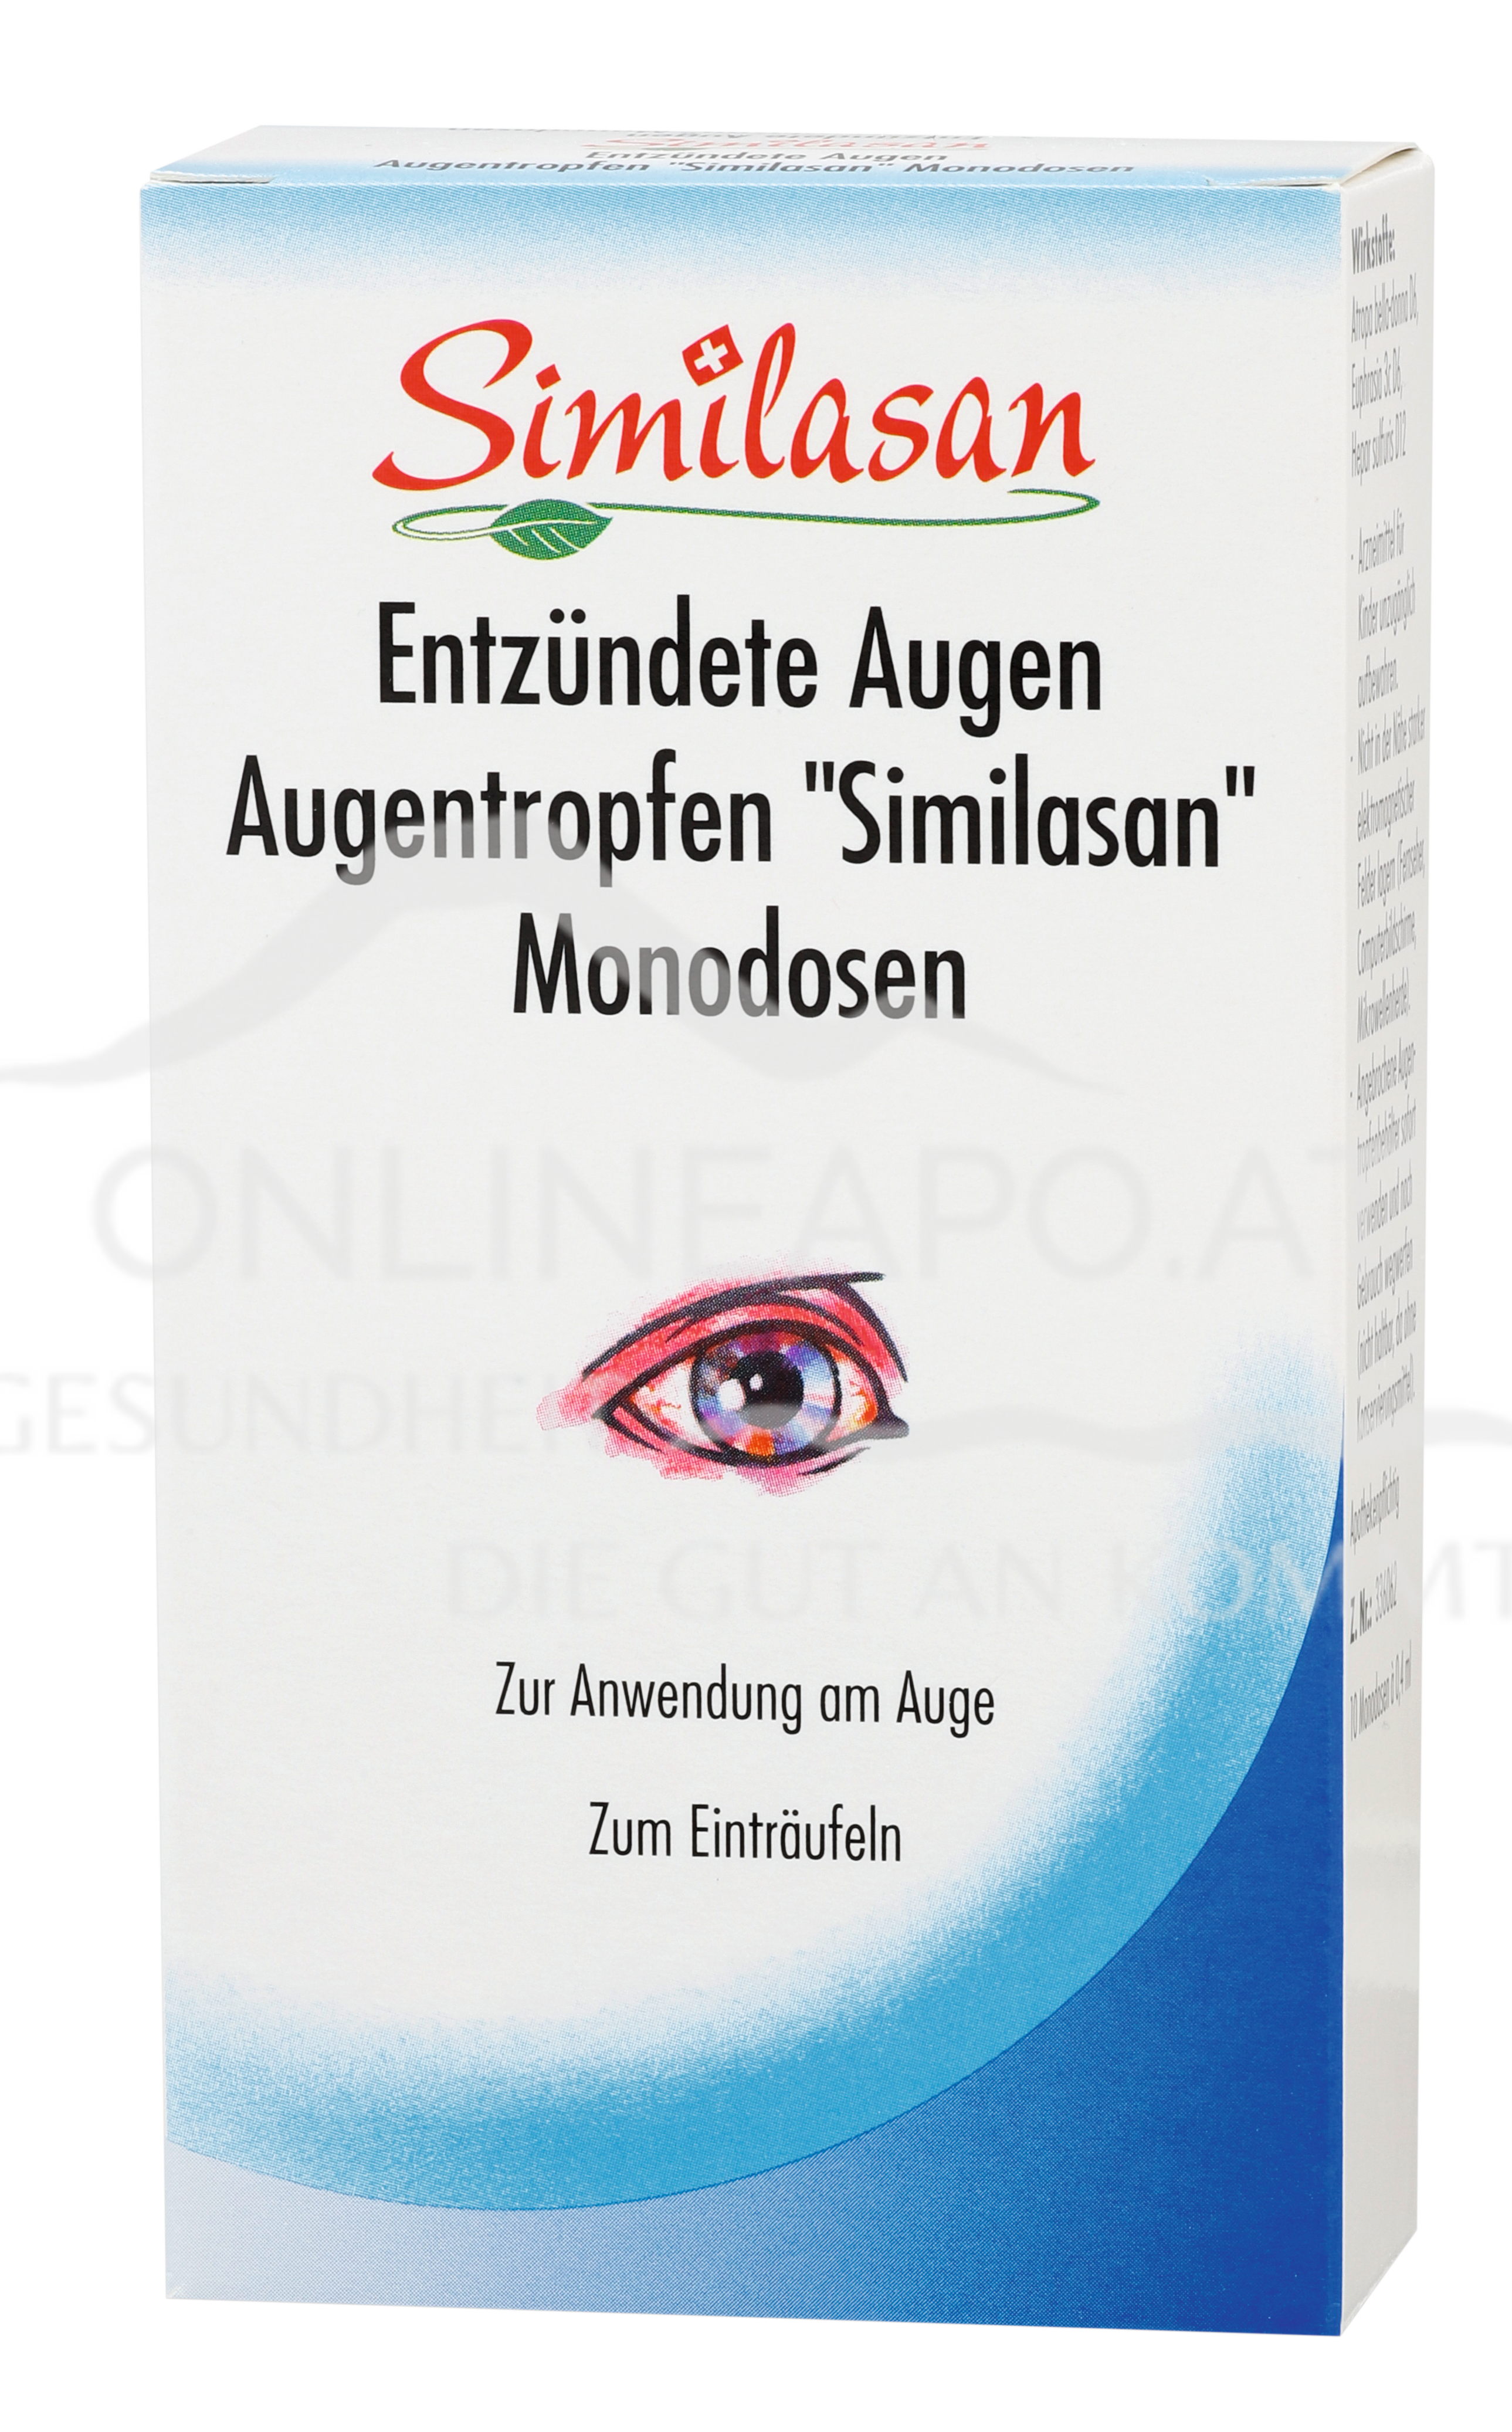 Similasan Entzündete Augen Augentropfen Monodosen